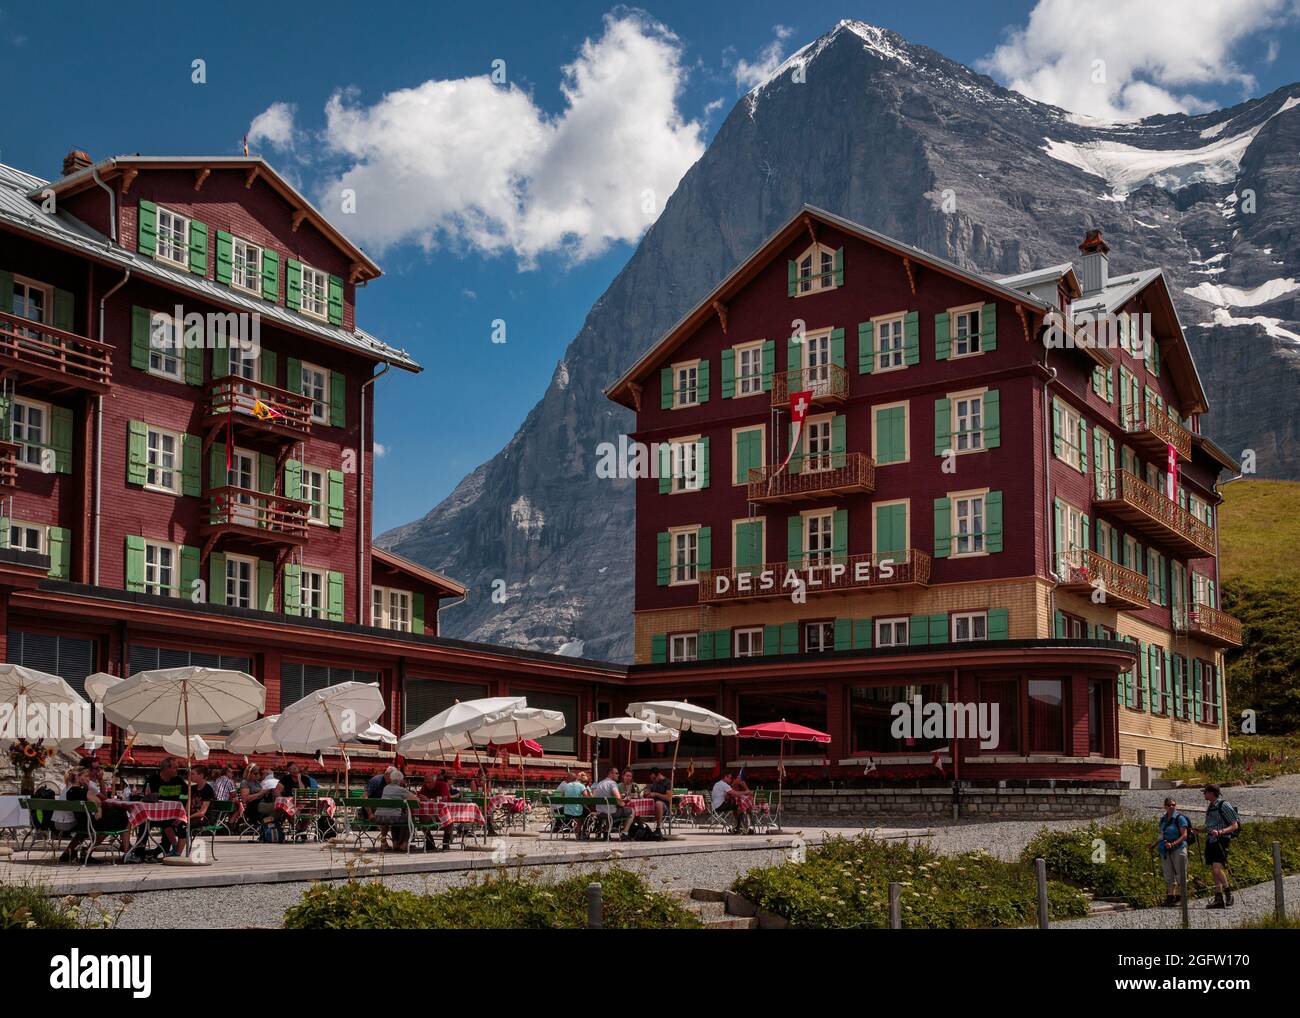 Kleine Scheidegg, Berner Oberland, Schweiz - August 01 2017 : Hotel Bellevue des Alpes mit der berühmten majestätischen Eiger-Nordwand im Hintergrund Stockfoto